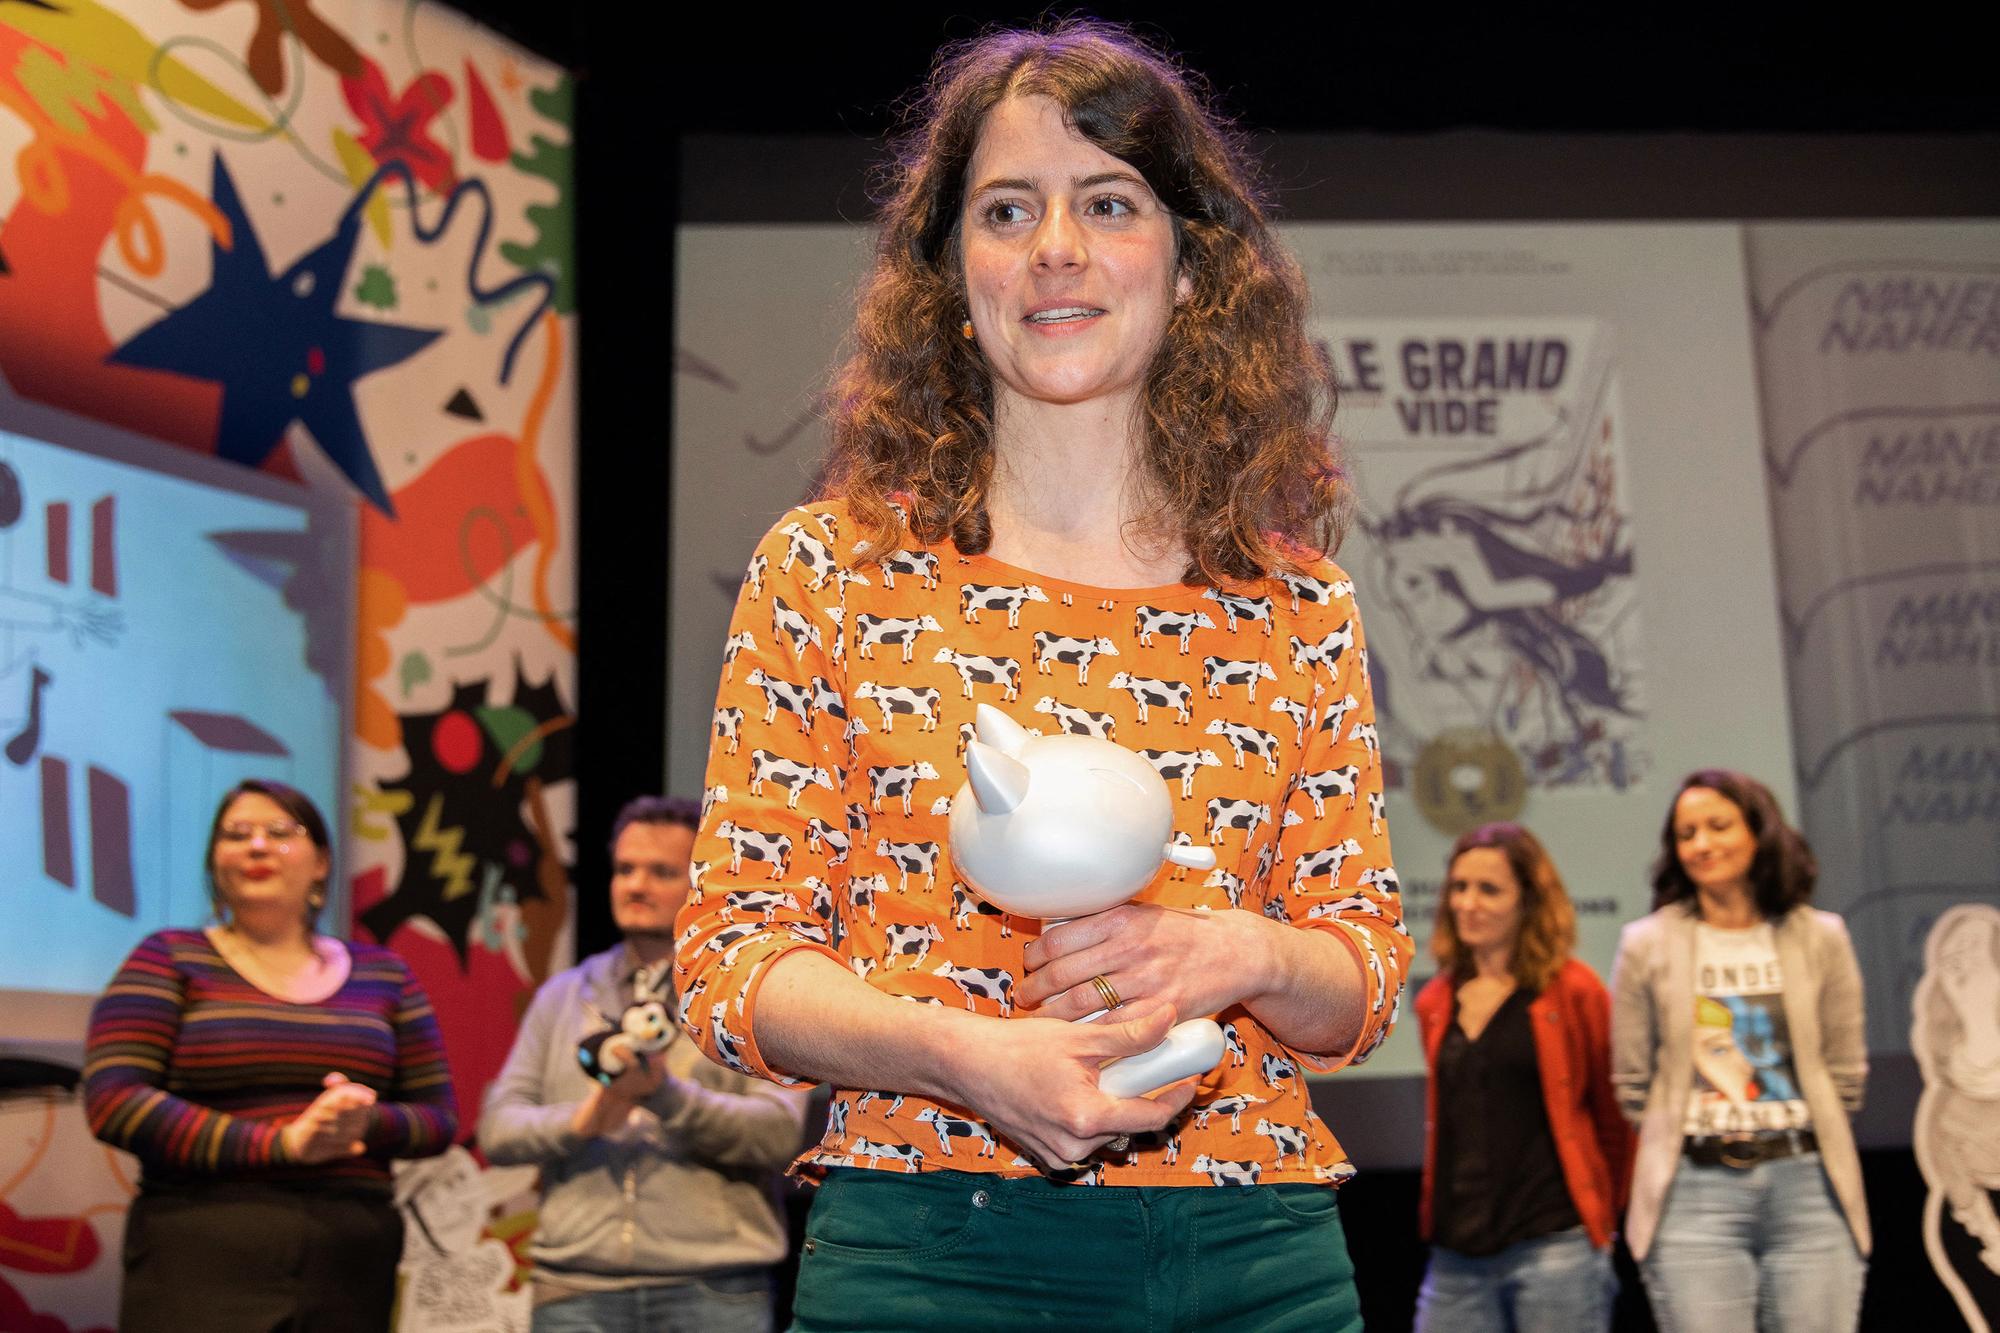 L'auteure de BD Léa Murawiec a reçu le Prix Fauve pour "Le grand vide" lors du festival d'Angoulême 2022. [AFP - Yohan Bonnet]